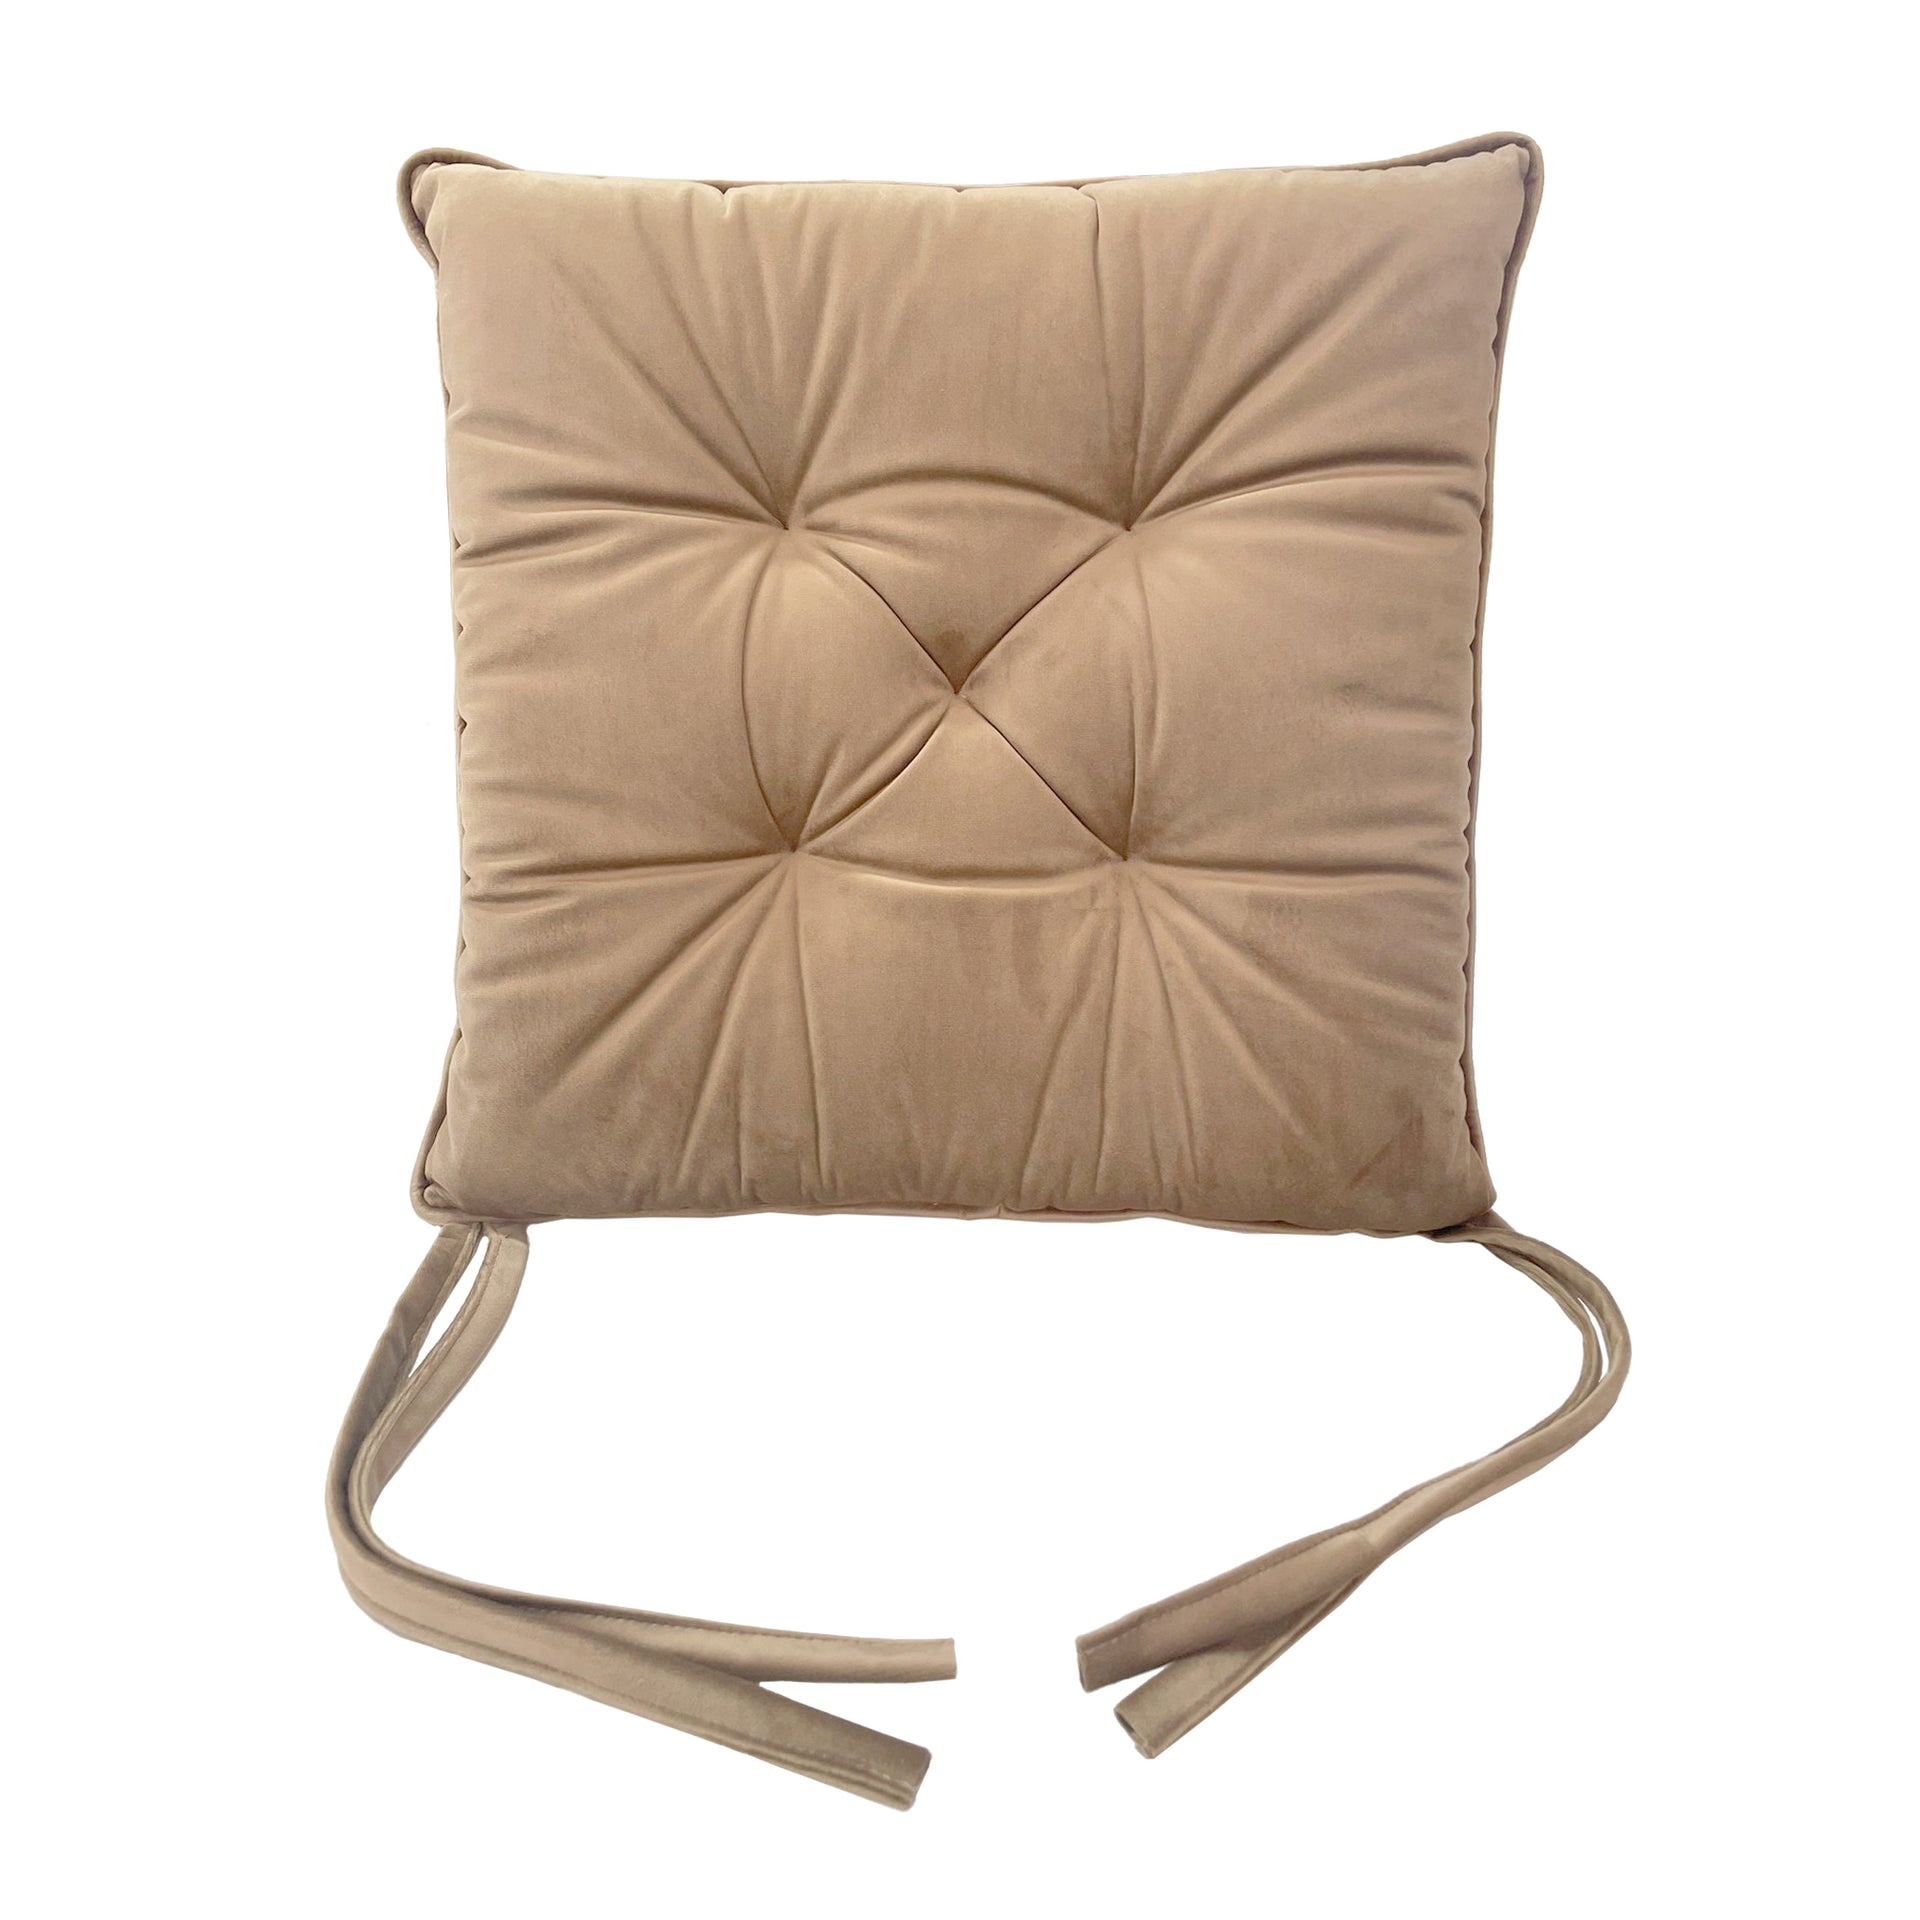 Cuscino in Velluto 45x45 cm - Il Tuo Comfort Personalizzato per la